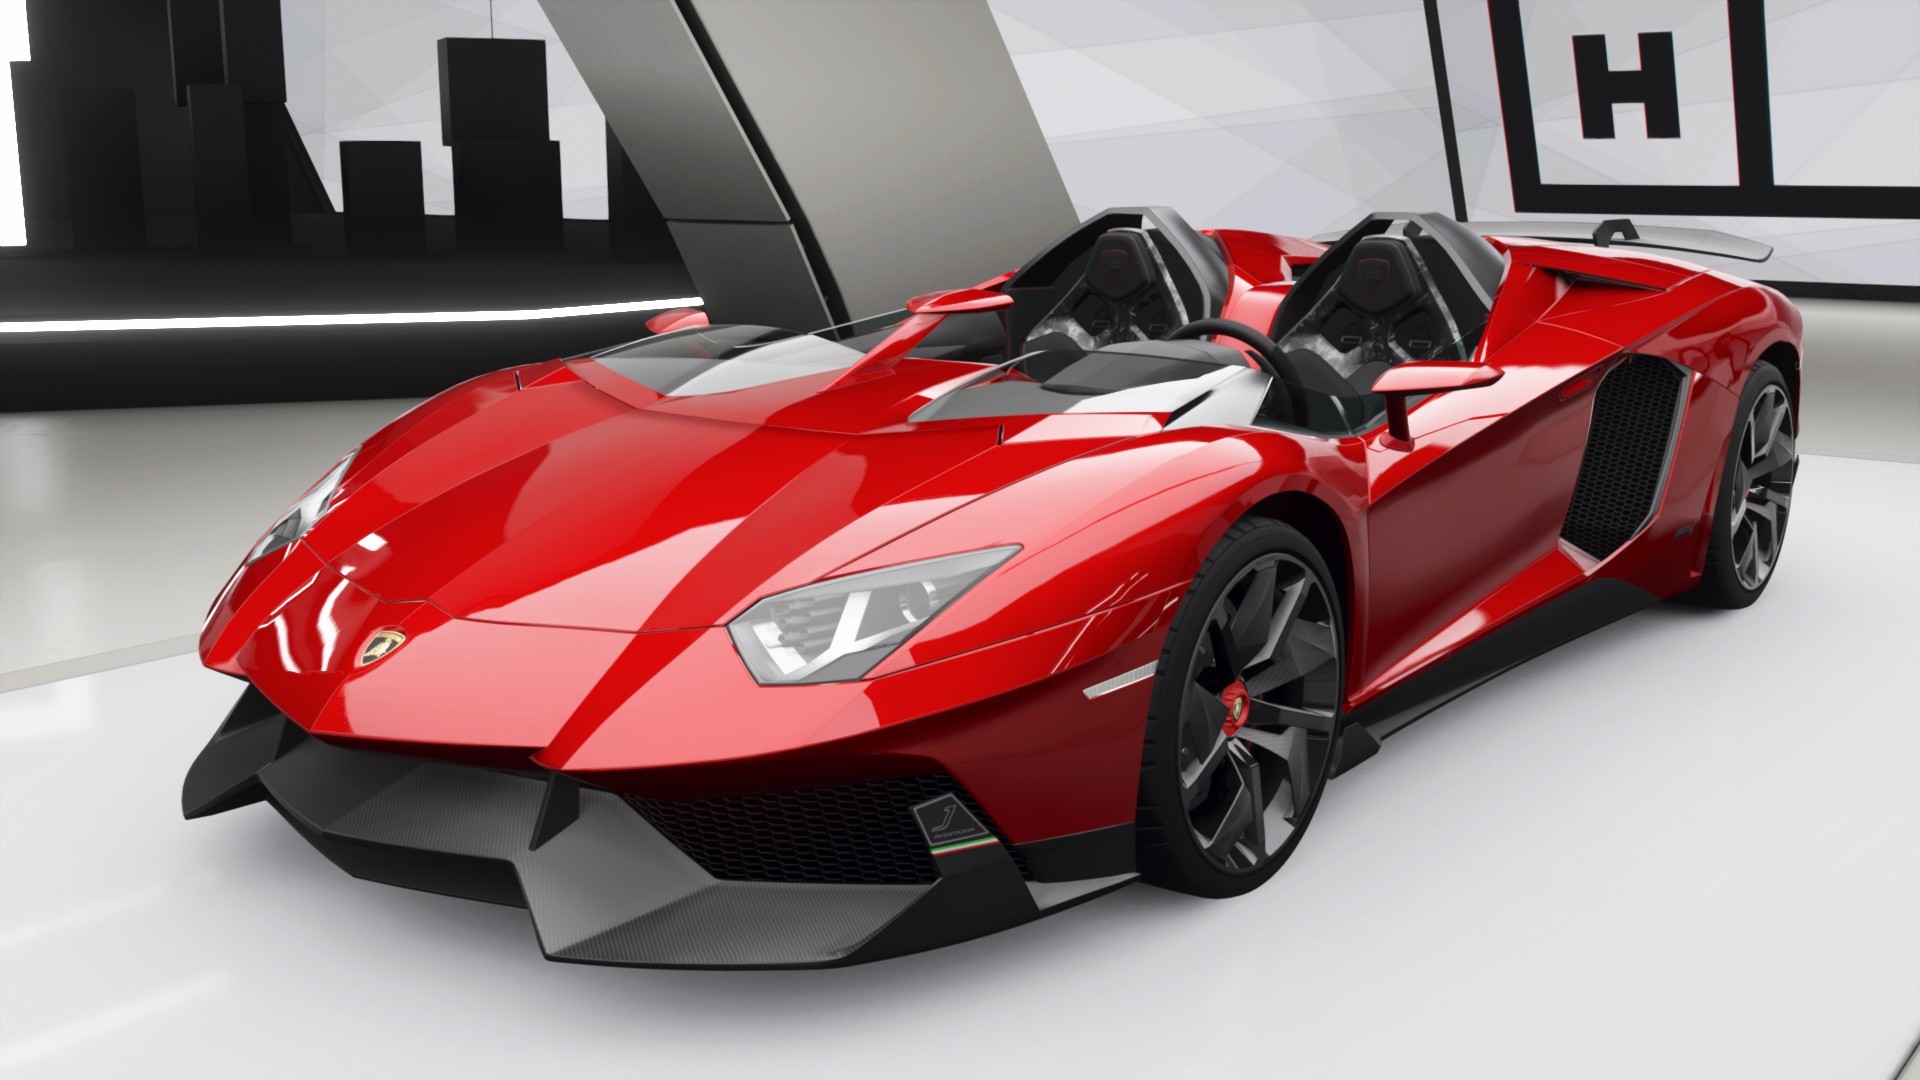 Thiết kế độc đáo siêu xe Lamborghini là một trong những điều thu hút được sự chú ý của rất nhiều người yêu xe trên thế giới. Với những chuẩn mực thiết kế công nghệ cao, Lamborghini đem đến những chiếc xe đẹp mắt và sáng tạo đến kinh ngạc. Hãy chiêm ngưỡng các thiết kế ấn tượng nhất của hãng xe này để thỏa mãn đam mê của bạn.